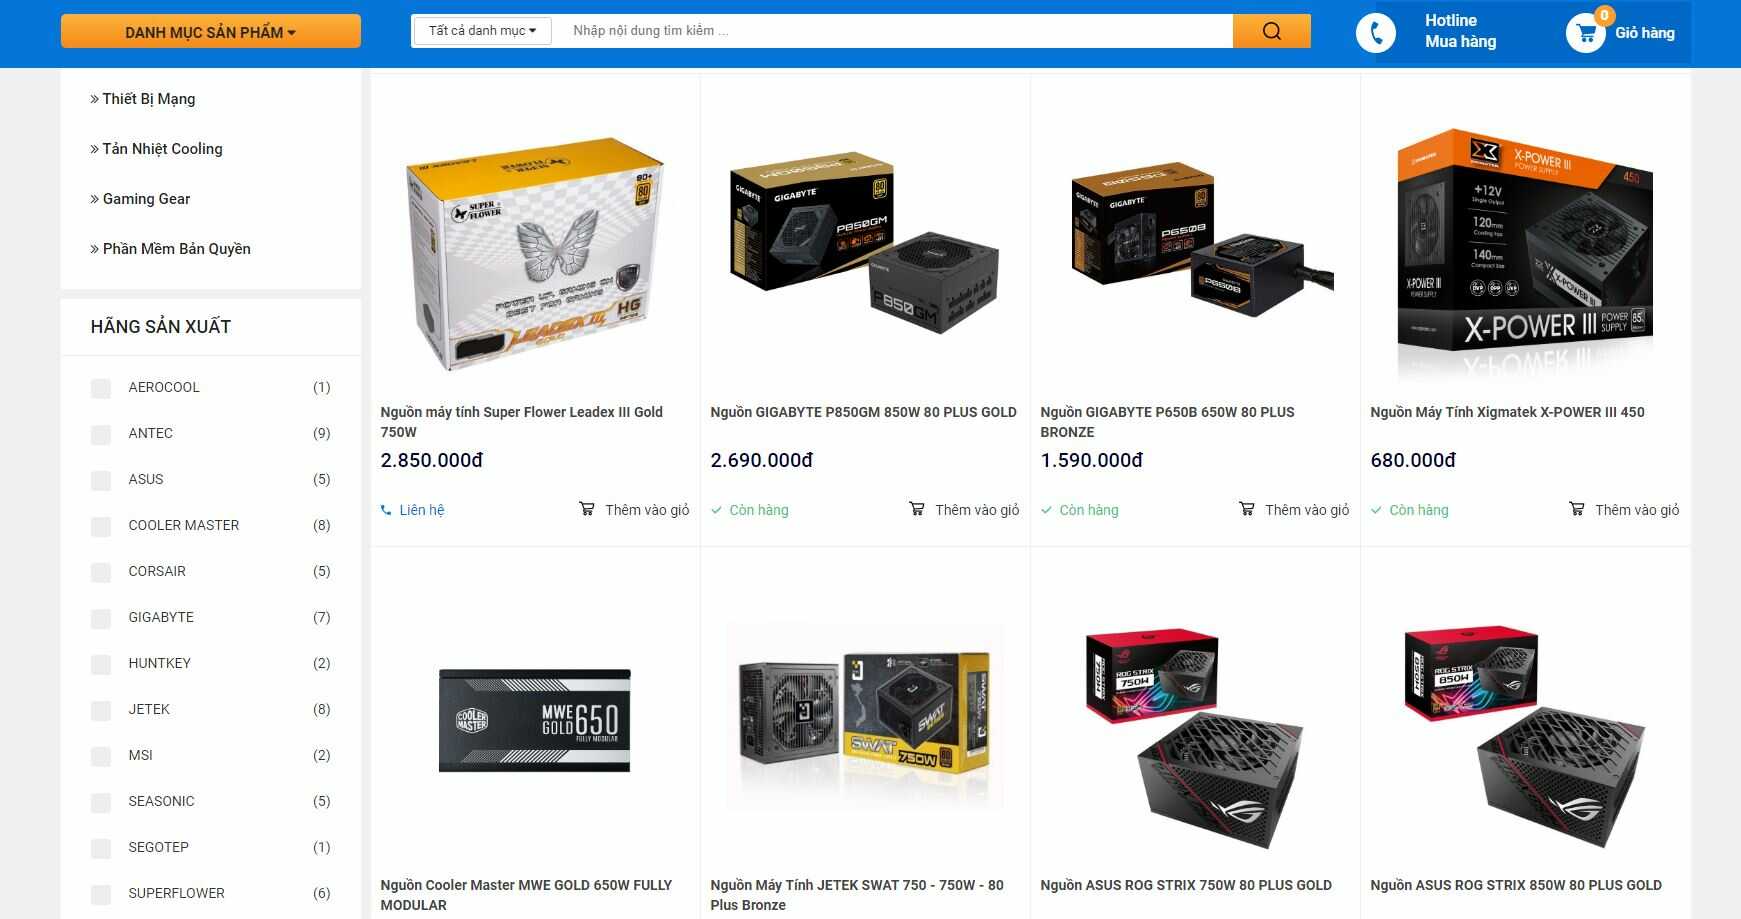 Hoàng Hà PC cung cấp và phân phối nguồn máy tính chính hãng, giá rẻ